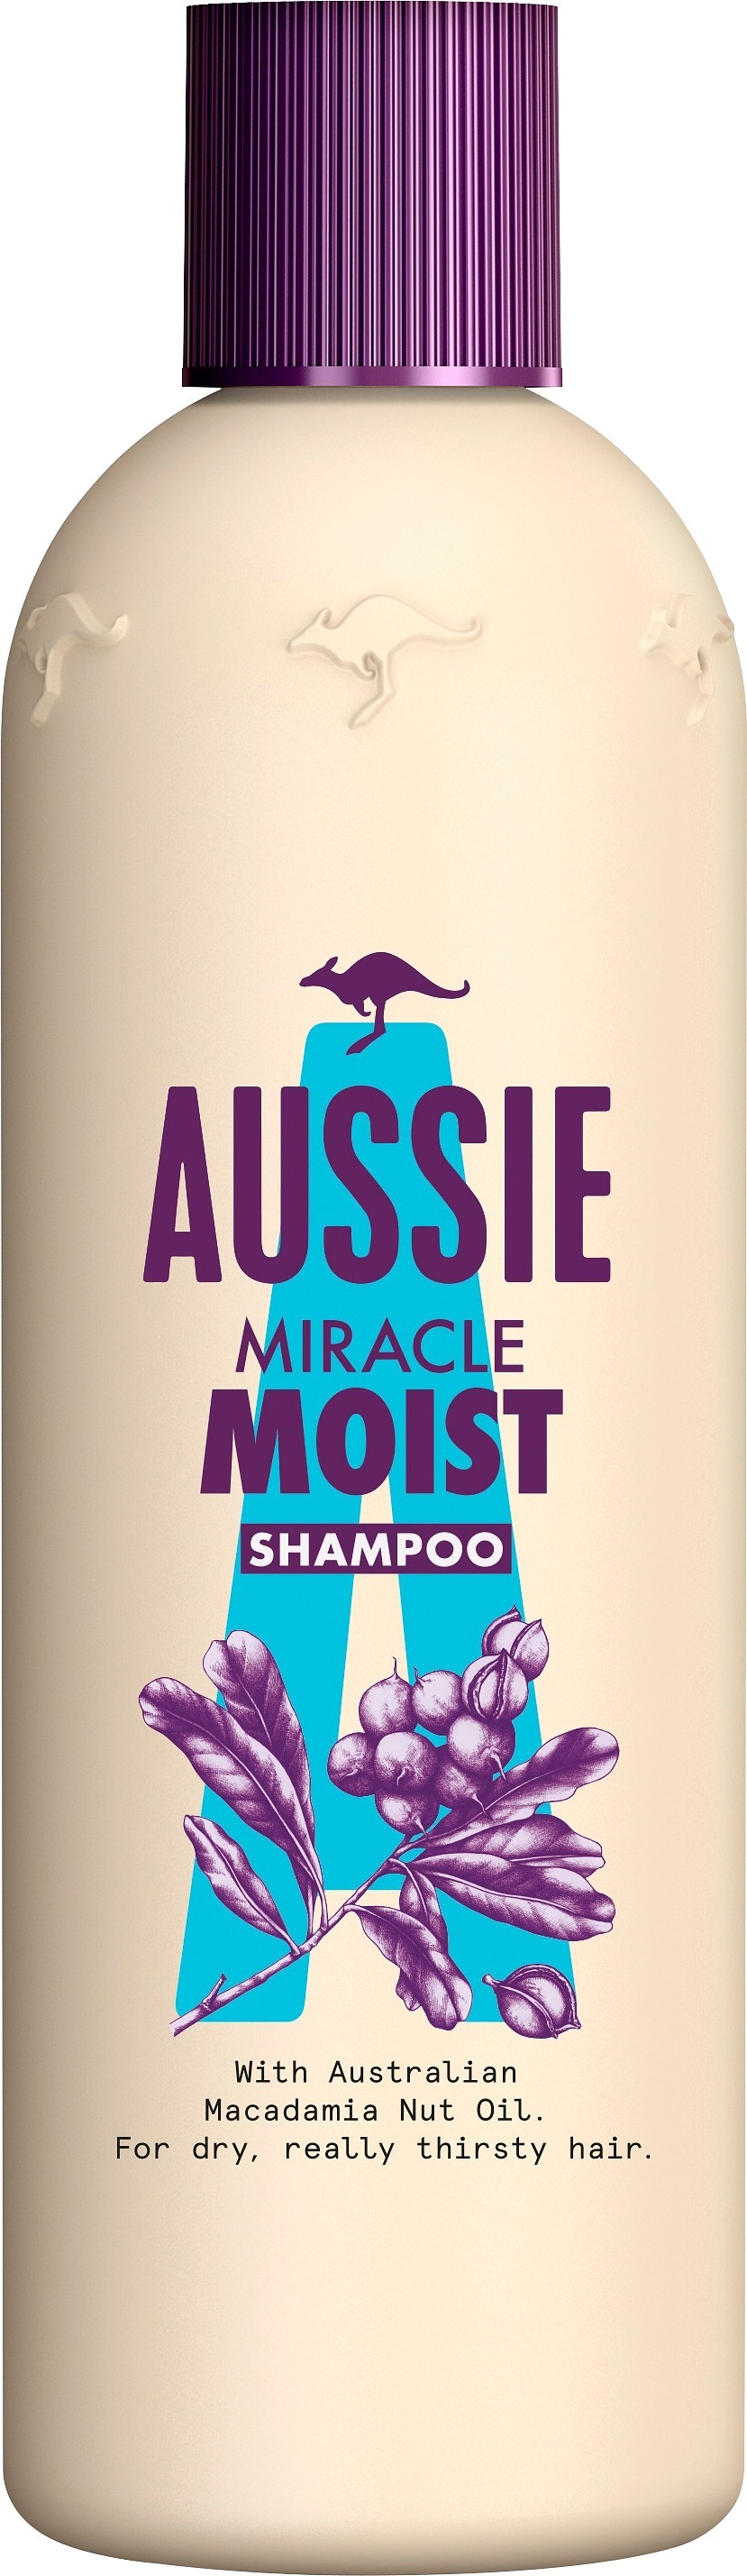 Aussie Miracle Moist Shampoo |